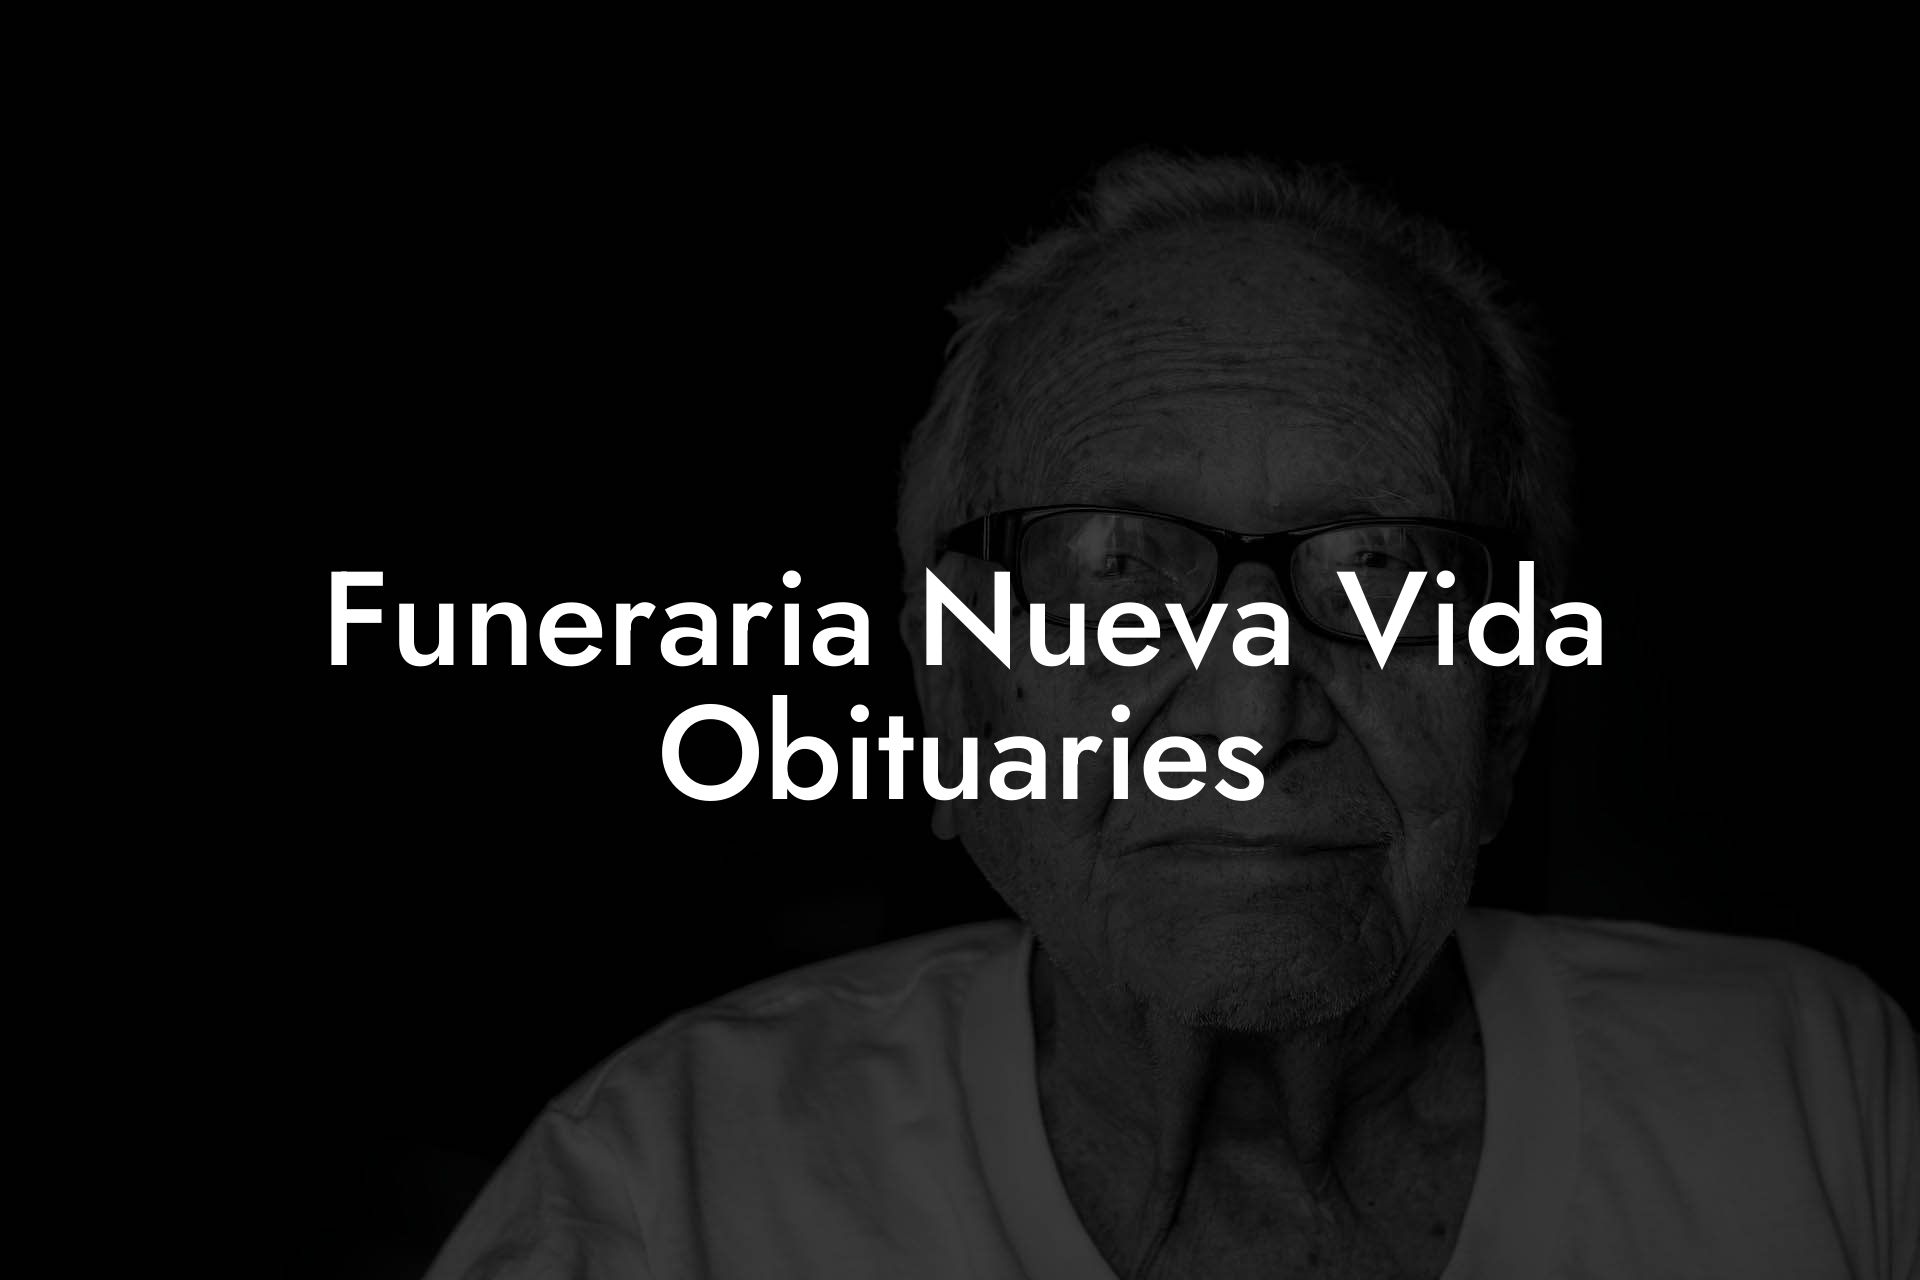 Funeraria Nueva Vida Obituaries